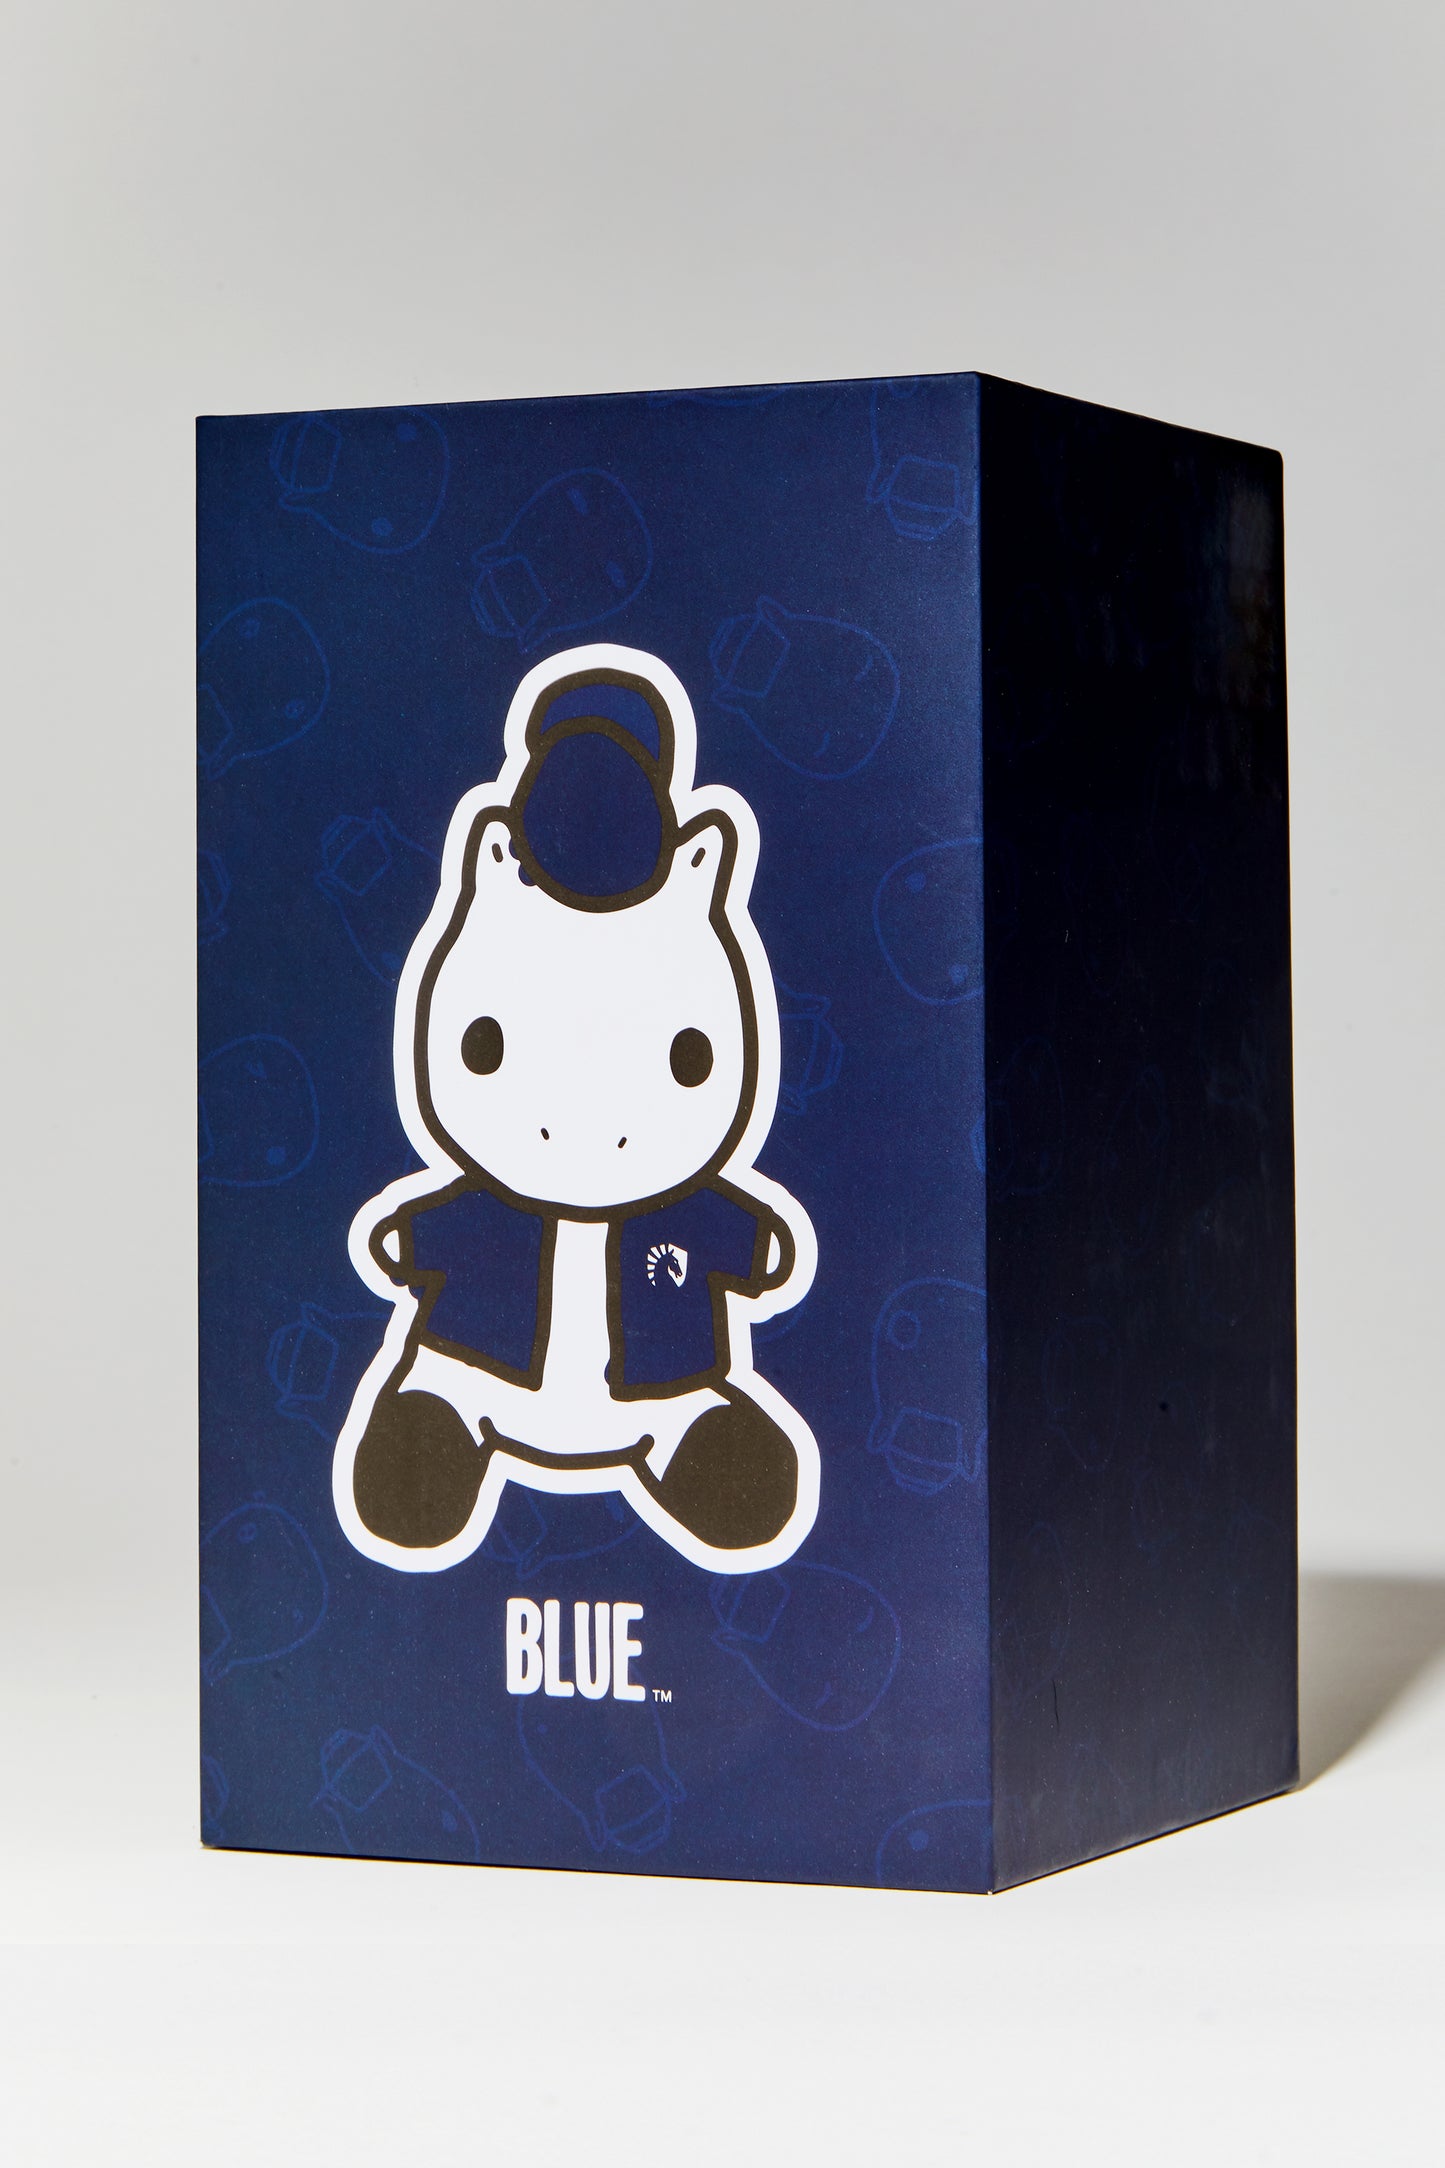 BOXED BLUE PLUSH 2.0